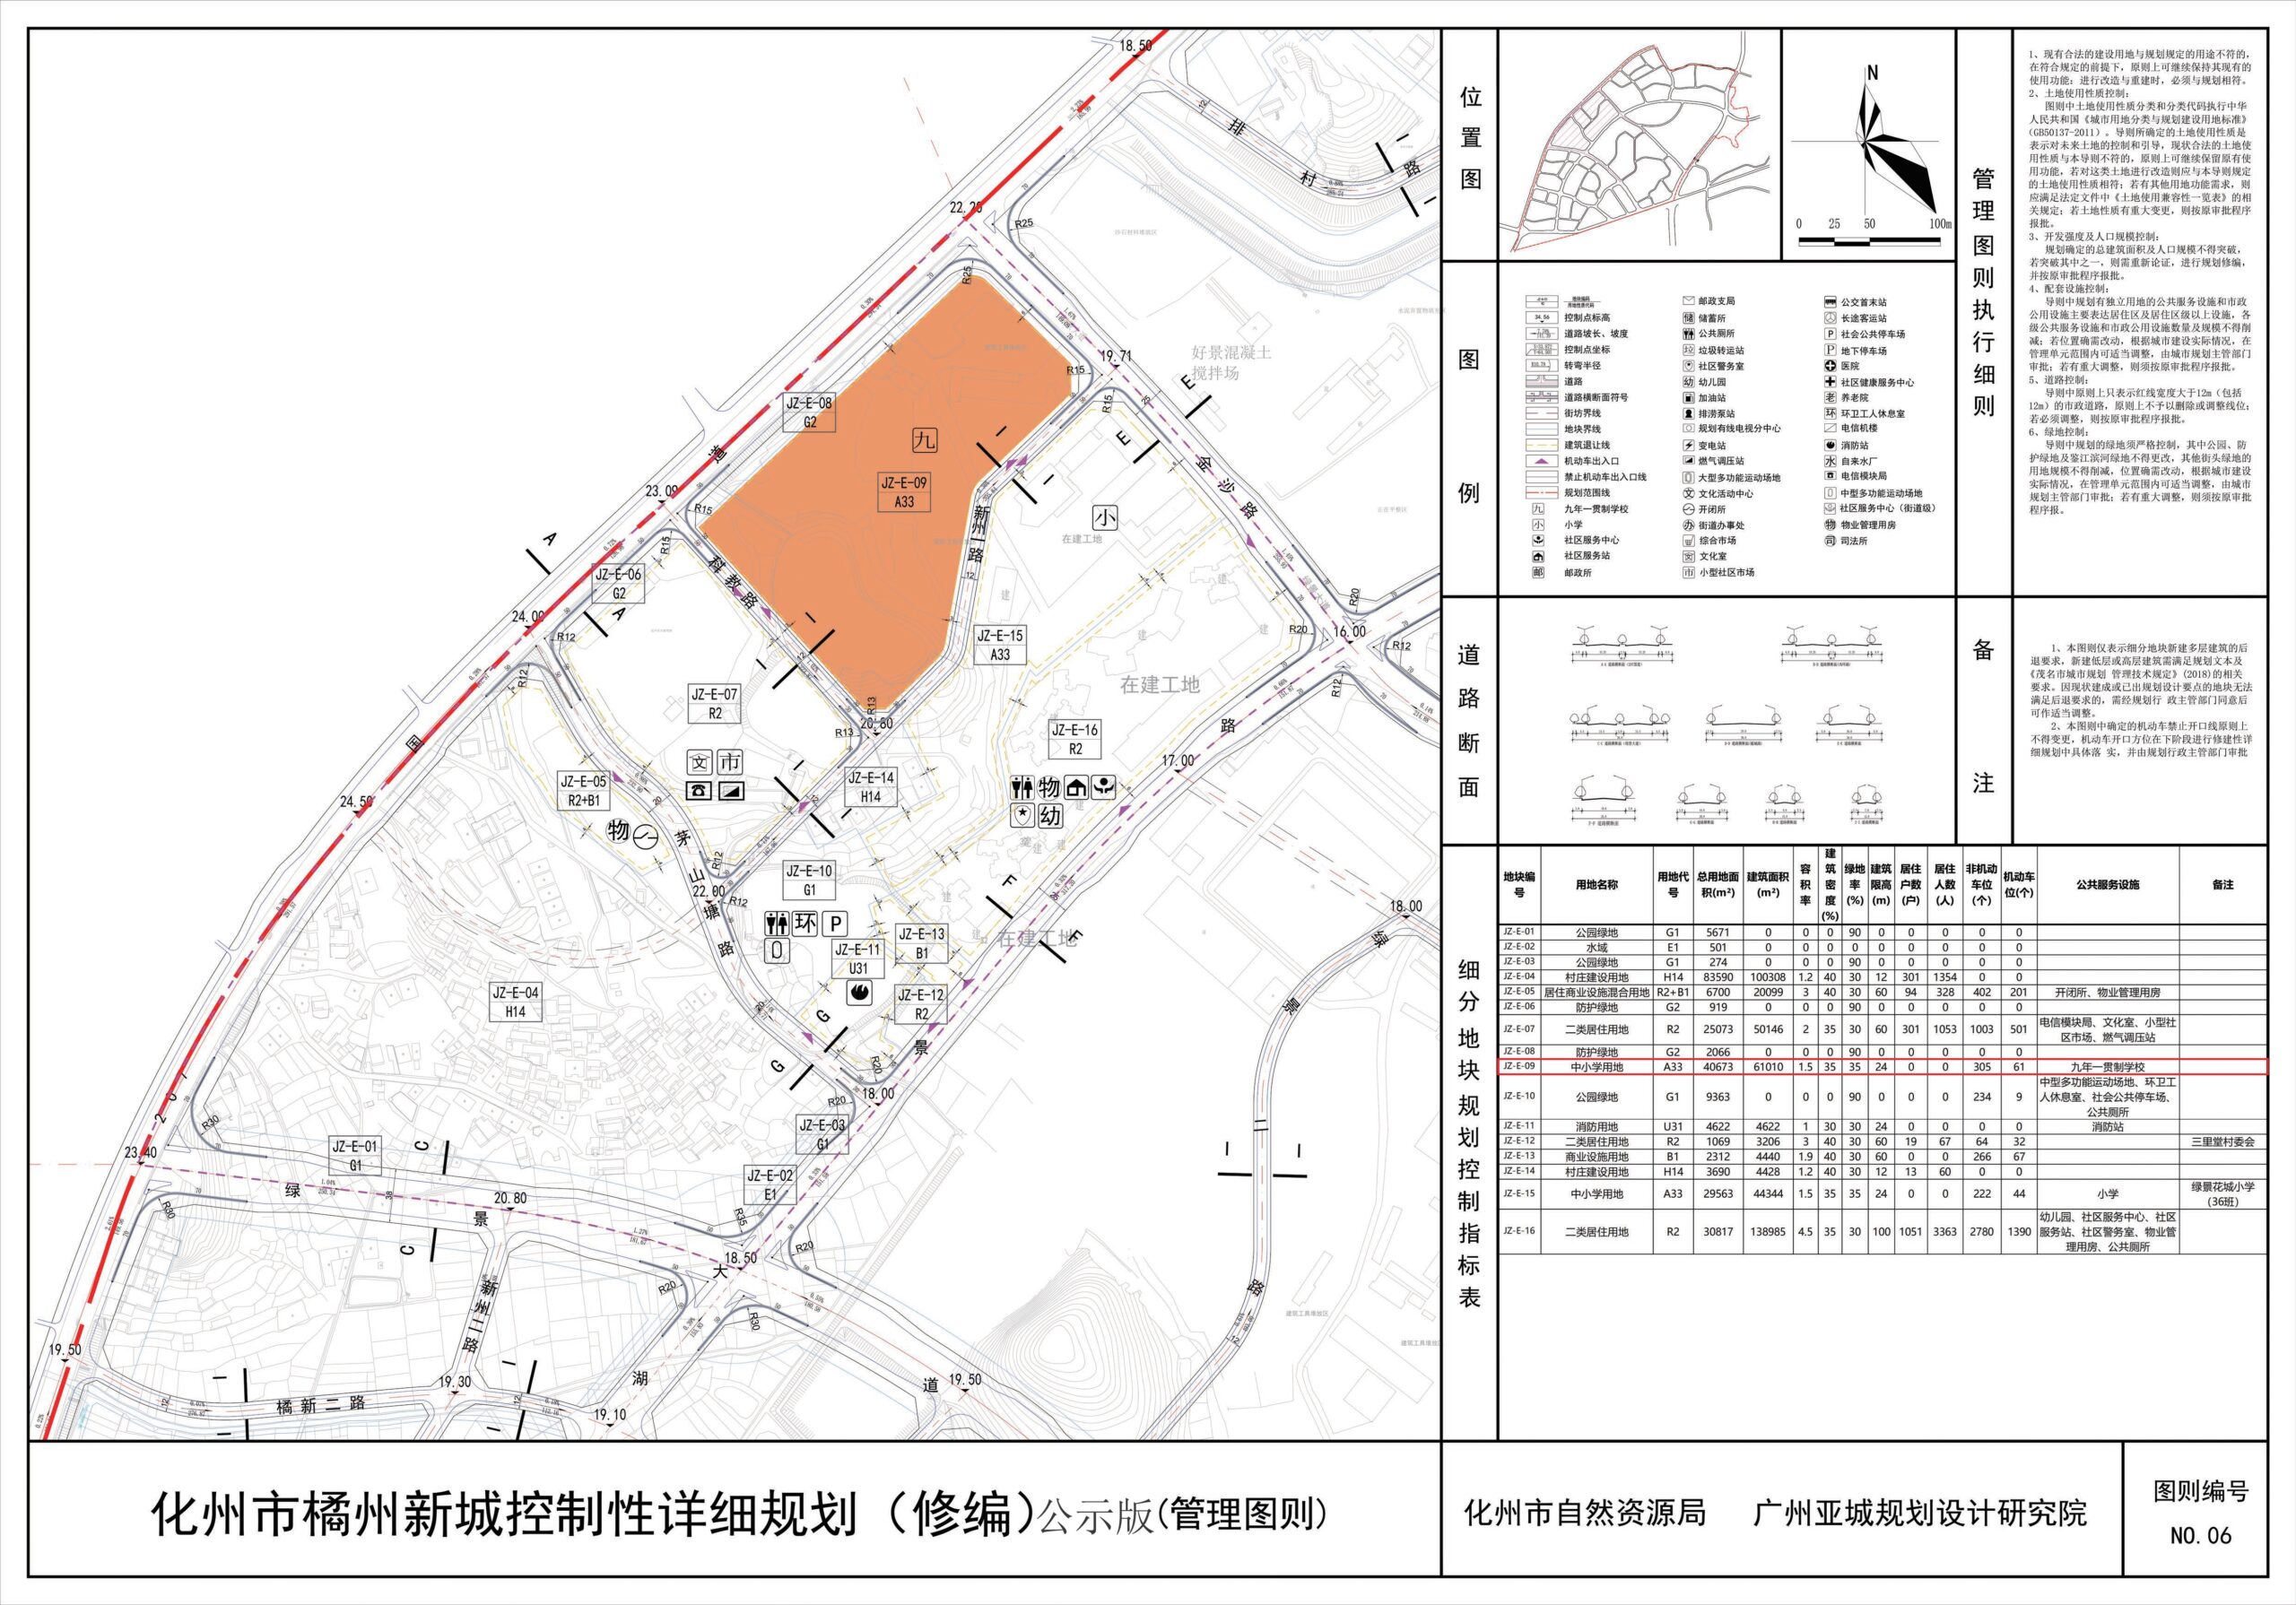 化州市绿景国际花城绿景花城小学二期修建性详细规划与设计方案批前公示 6